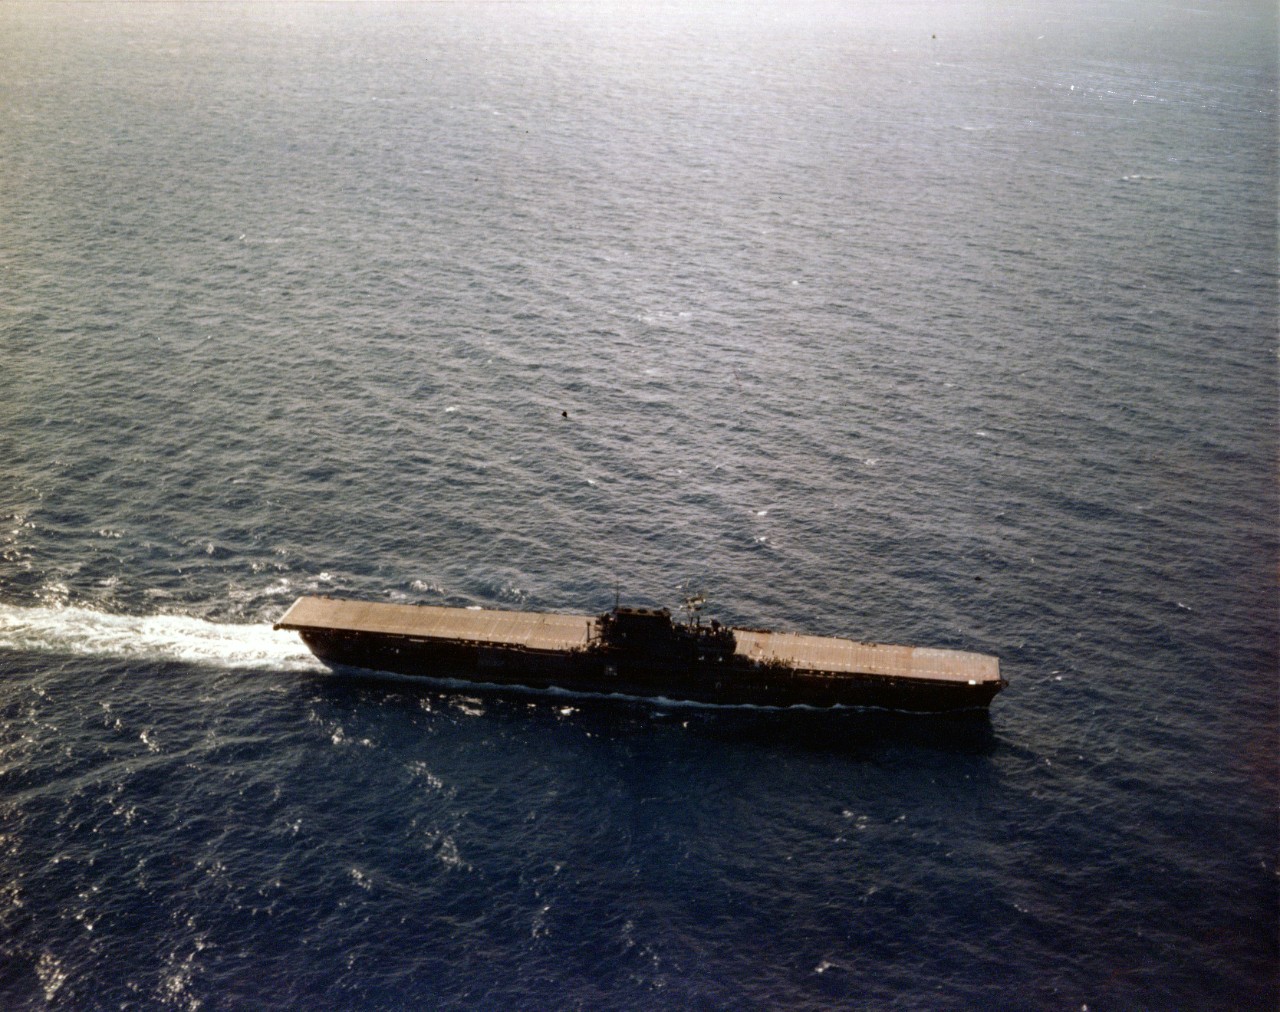 L'USS Enterprise photographié en juin 1941 se met face au vent pour récupérer une de ses flottilles embarquées. Son pont était en bois naturel. Il avait été peint en bleu lors d'essais de camouflage en juillet 1941 -- Photo US Navy (Source: National Archives, Washington D.C.) -